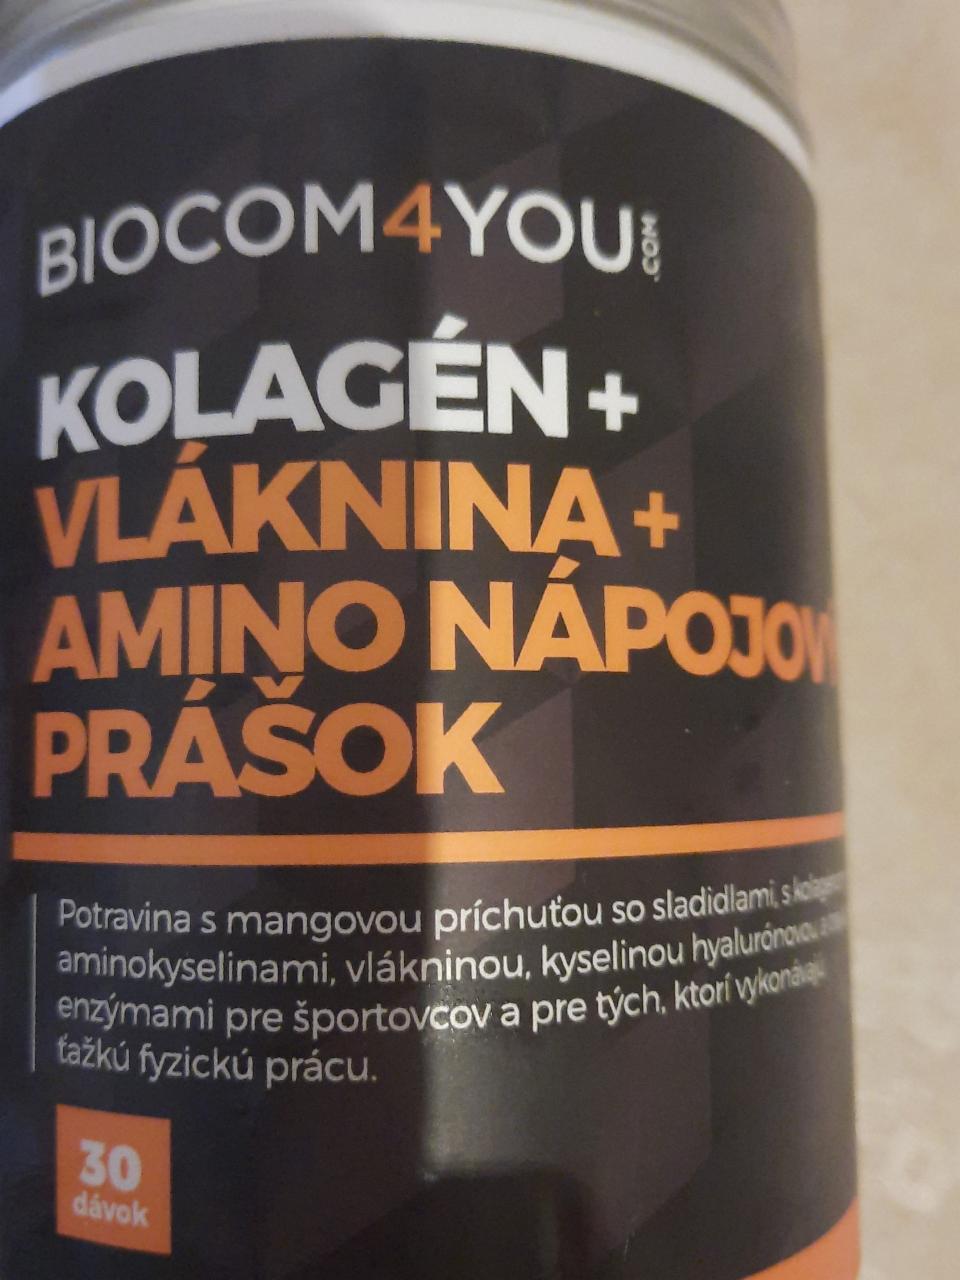 Fotografie - Kolagén + vláknina + amino nápojový prášok Biocom4you